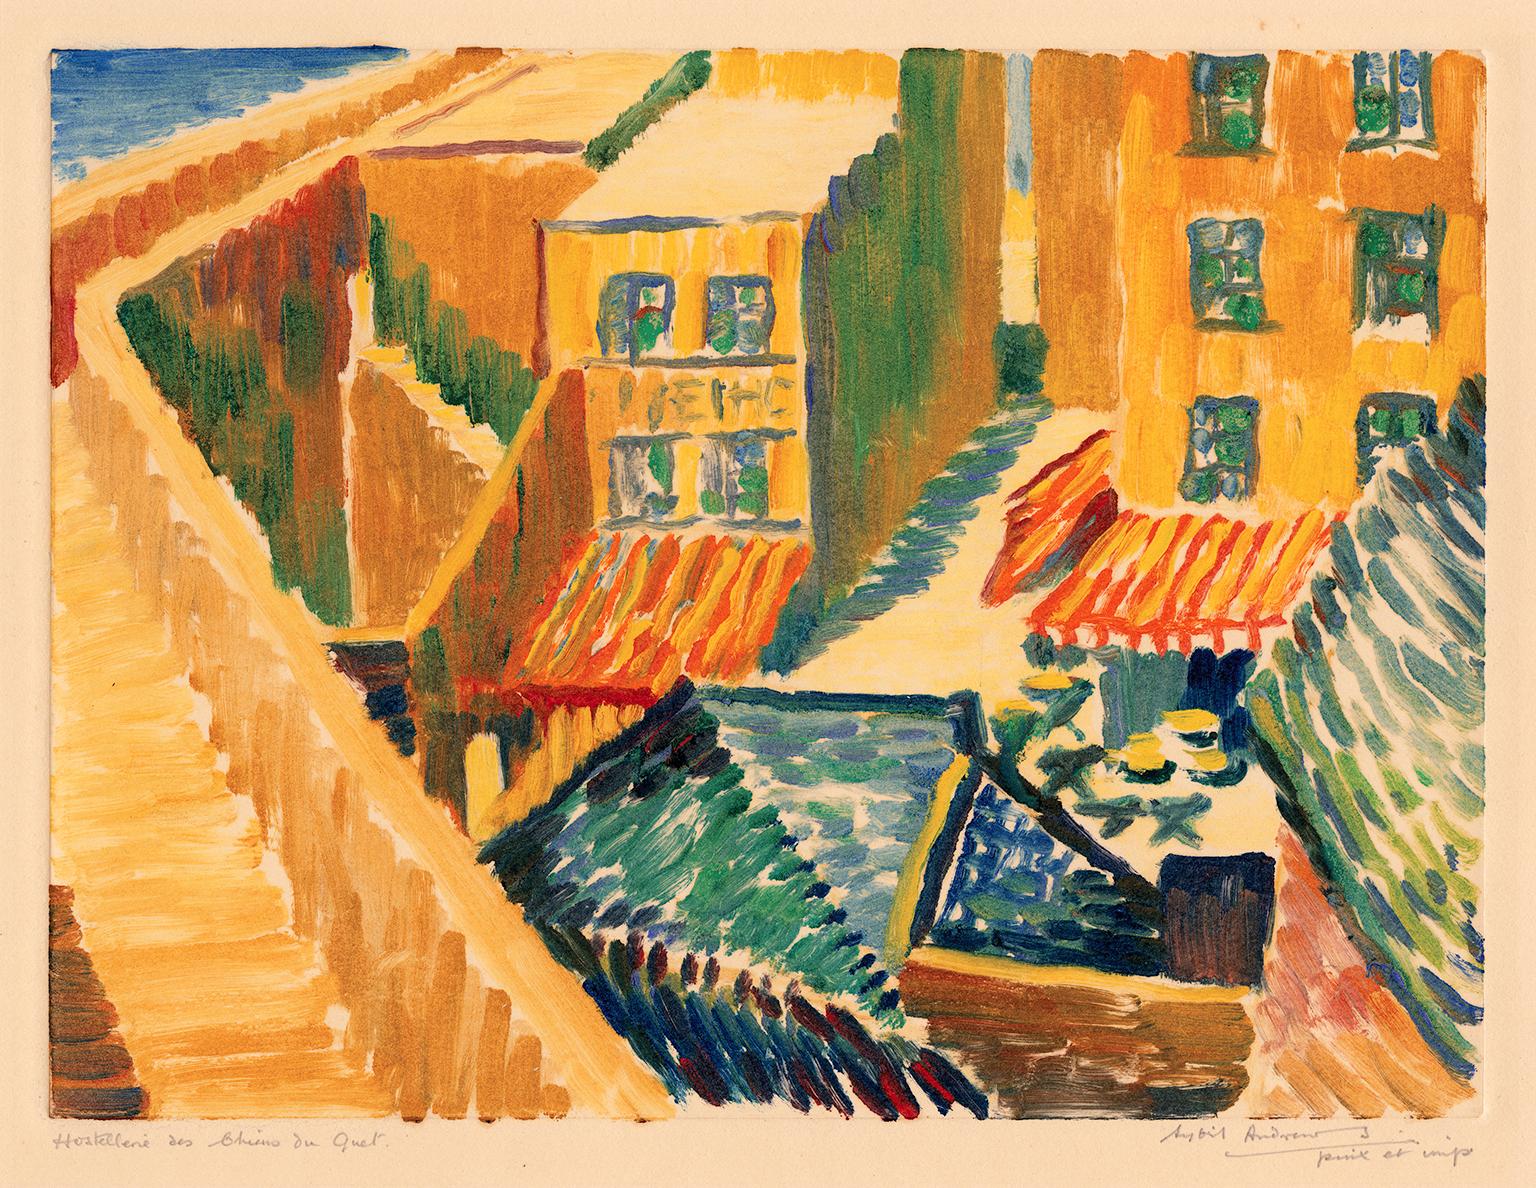 'Hostellerie des Chiens du Guet' — 1920s British Impressionism